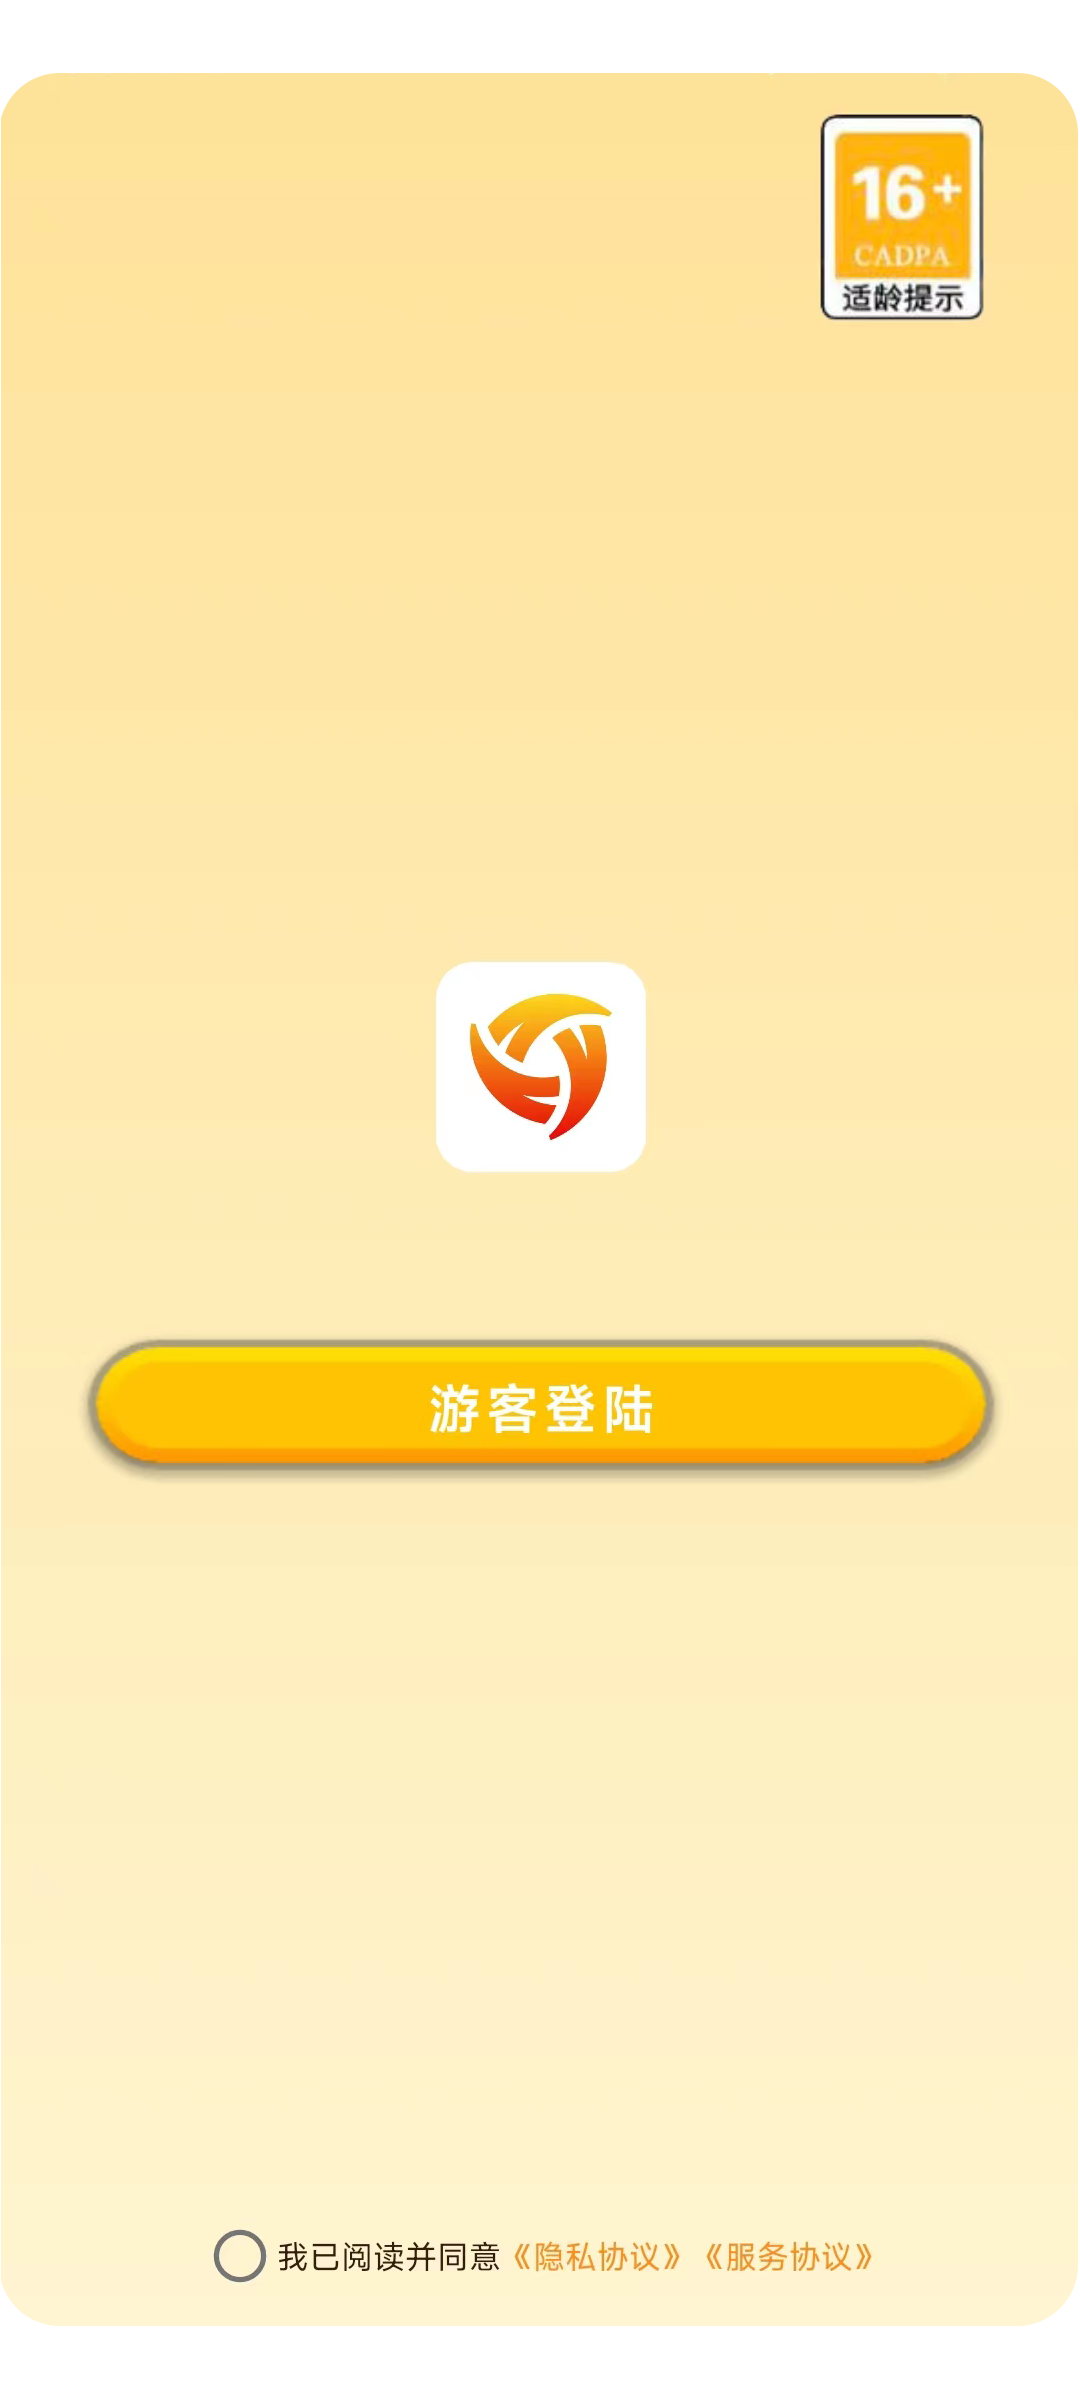 芒果宝盒安卓官方版 V4.1.2